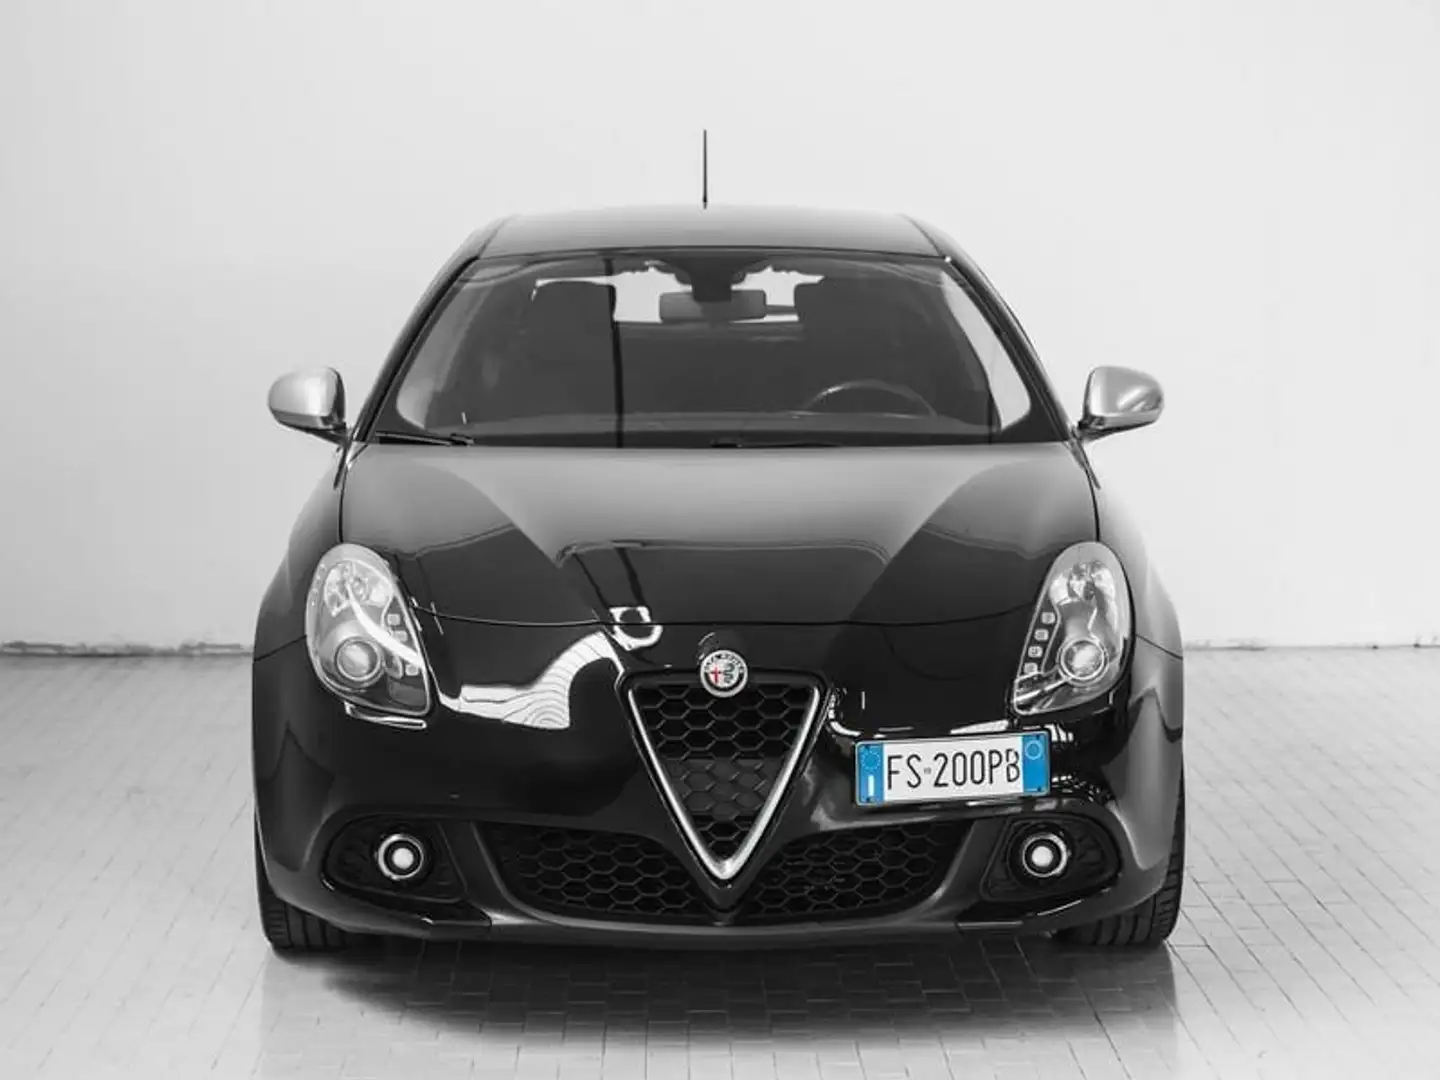 Alfa Romeo Giulietta 1.6 JTDm 120 CV Business - 2